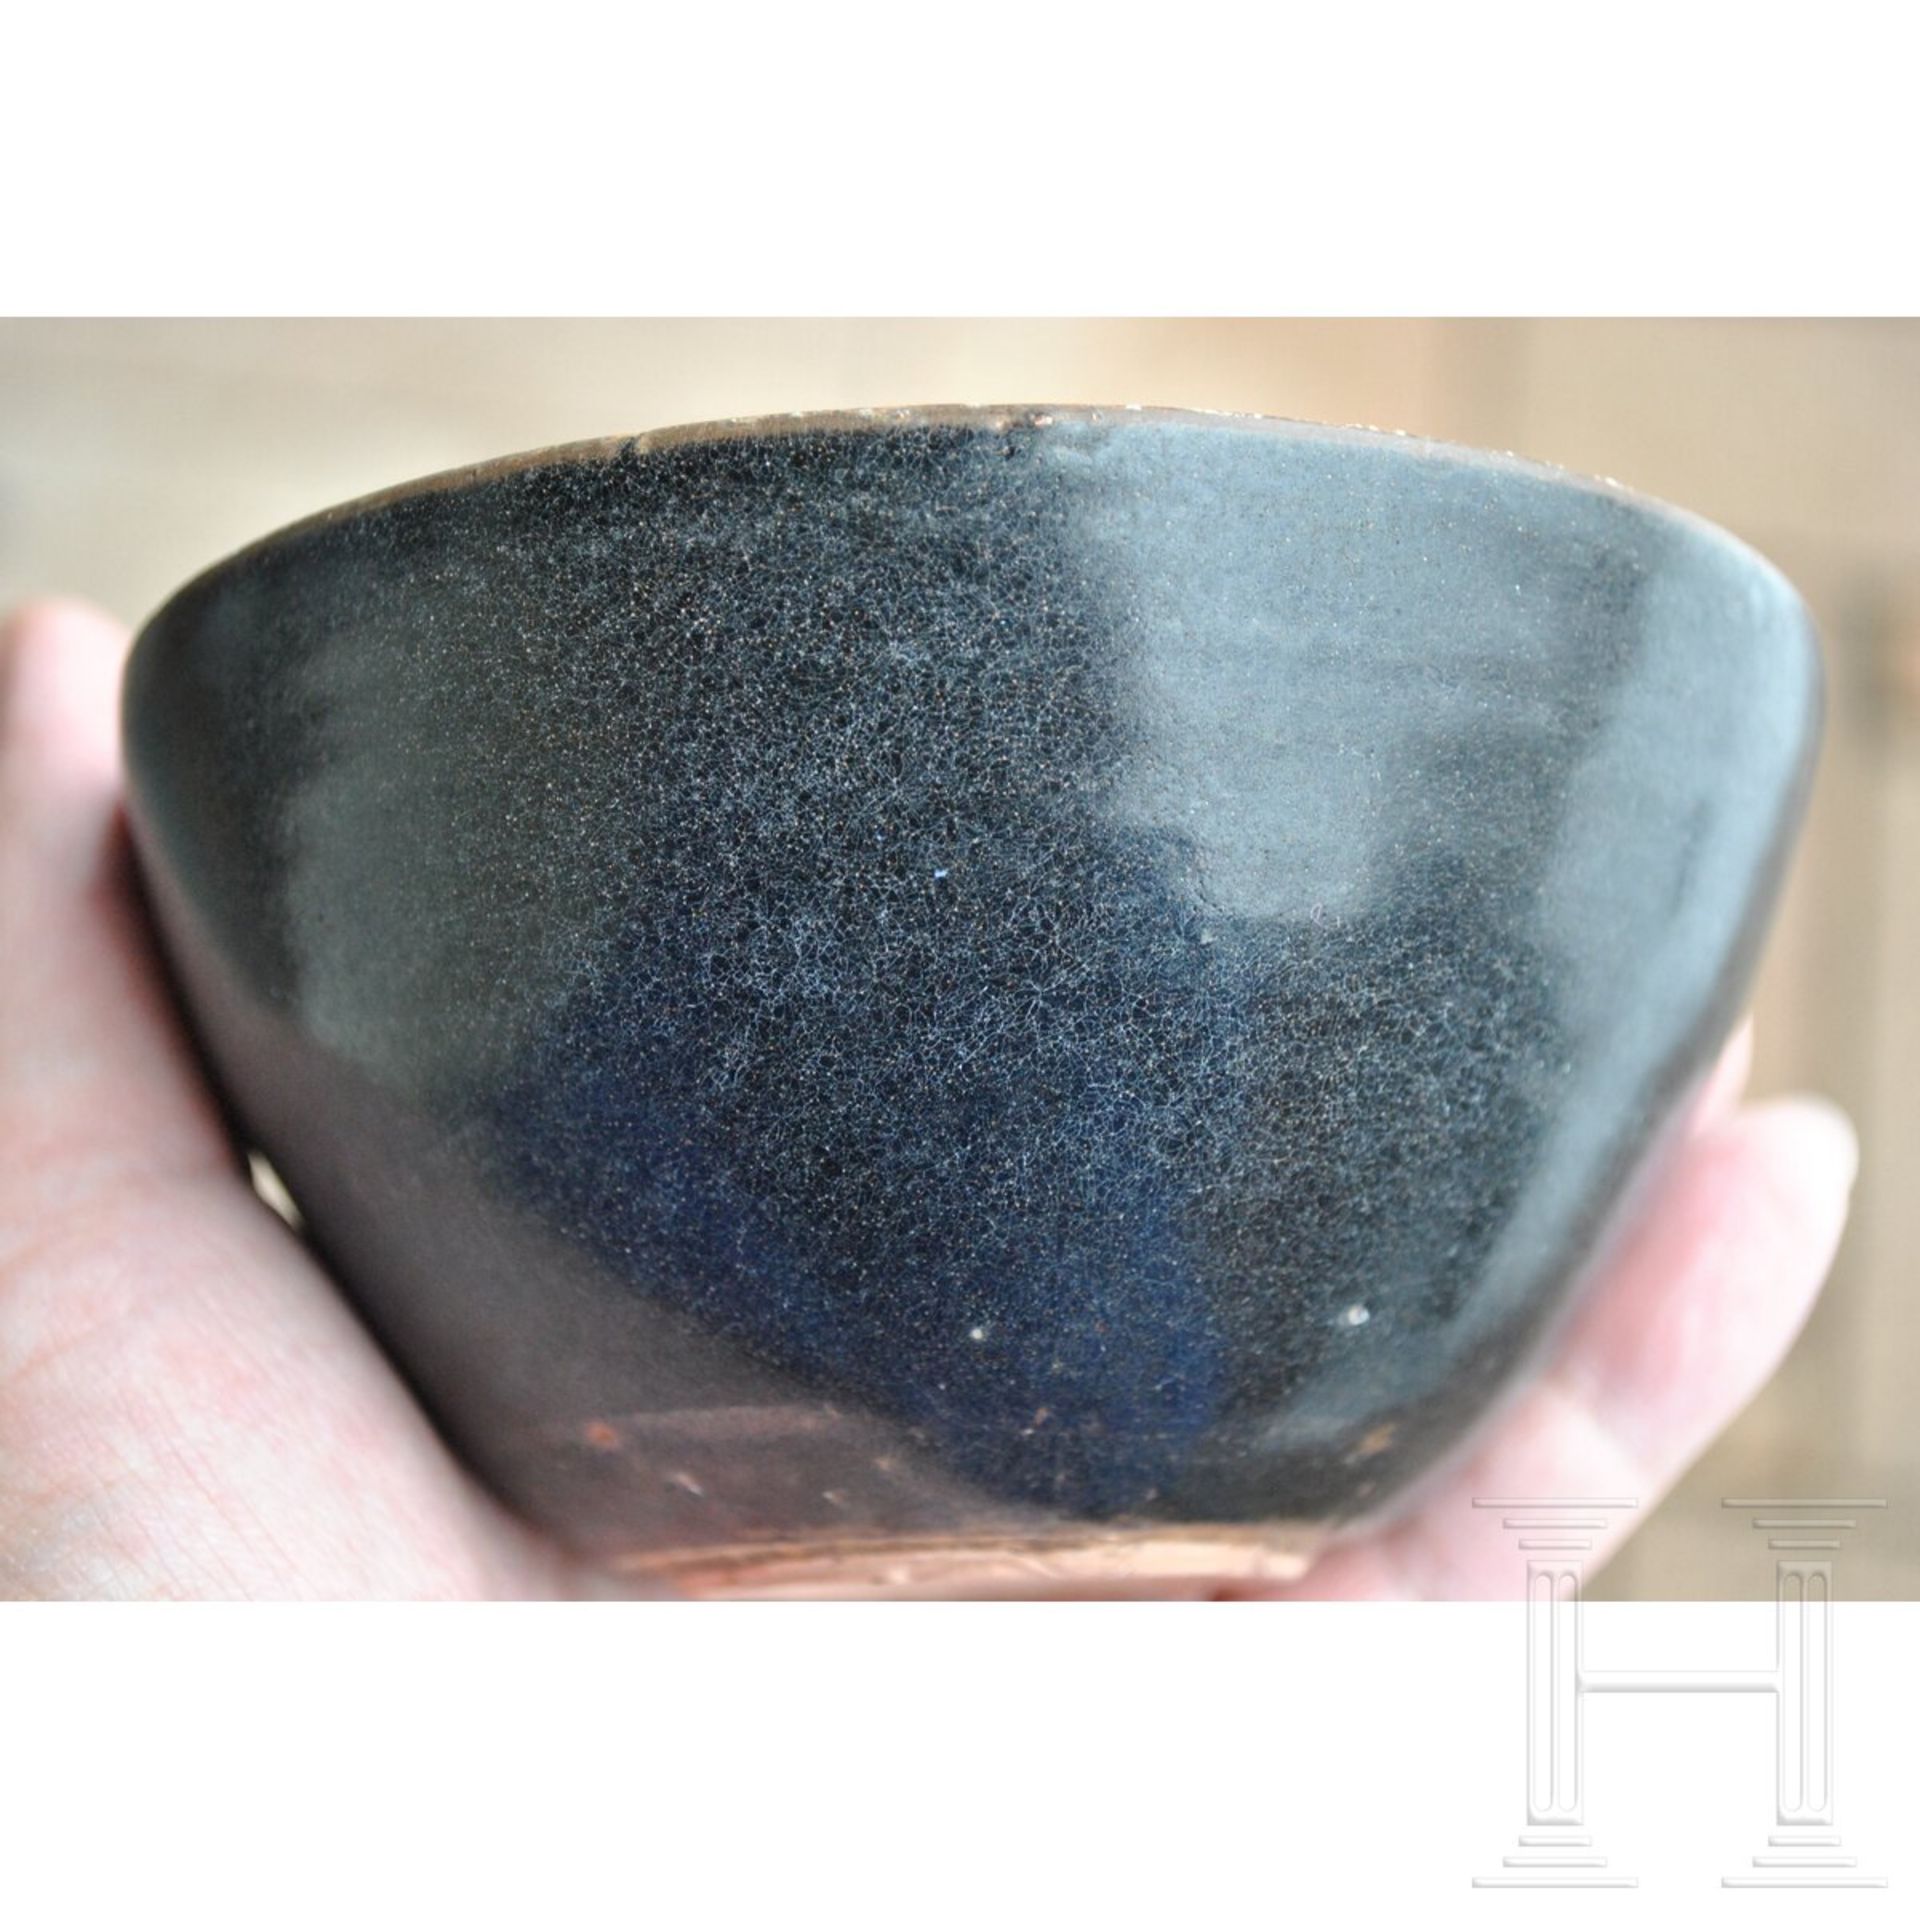 Jizhou-Teeschale, schwarz glasiert, südliche Song-Dynastie (12. - 13. Jhdt.) - Bild 15 aus 17